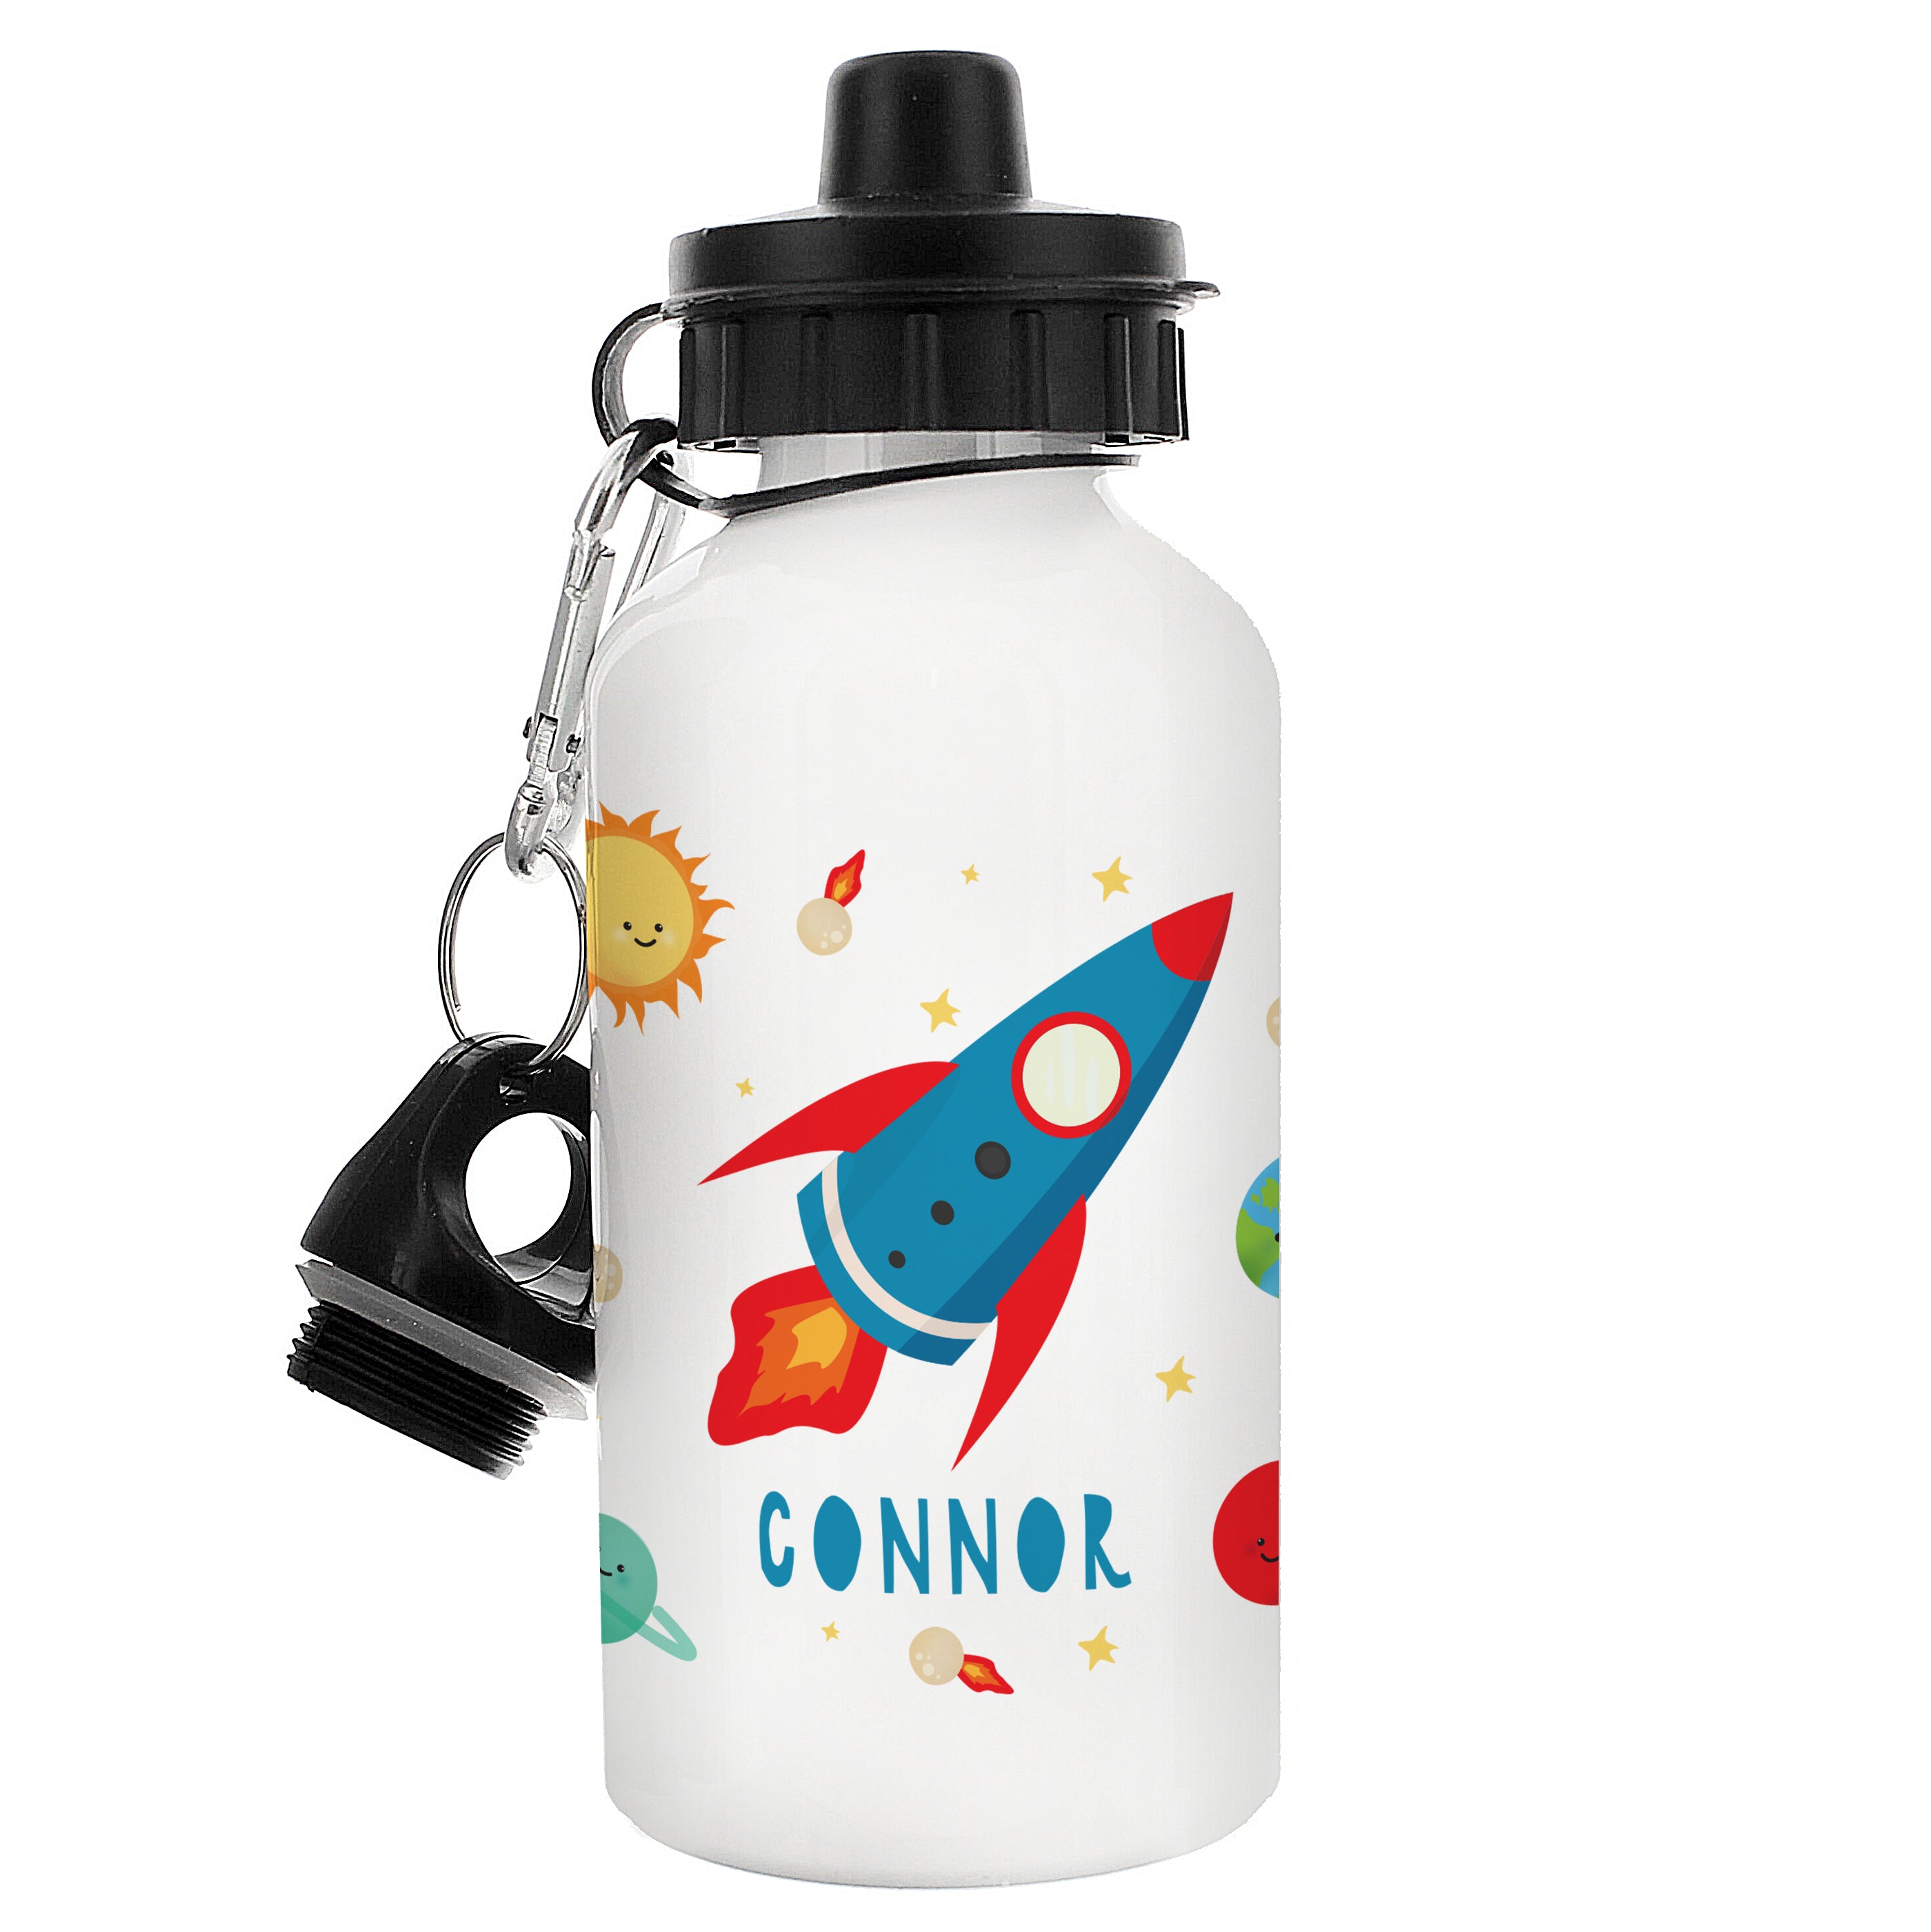 Space Rocket White Drinks Bottle